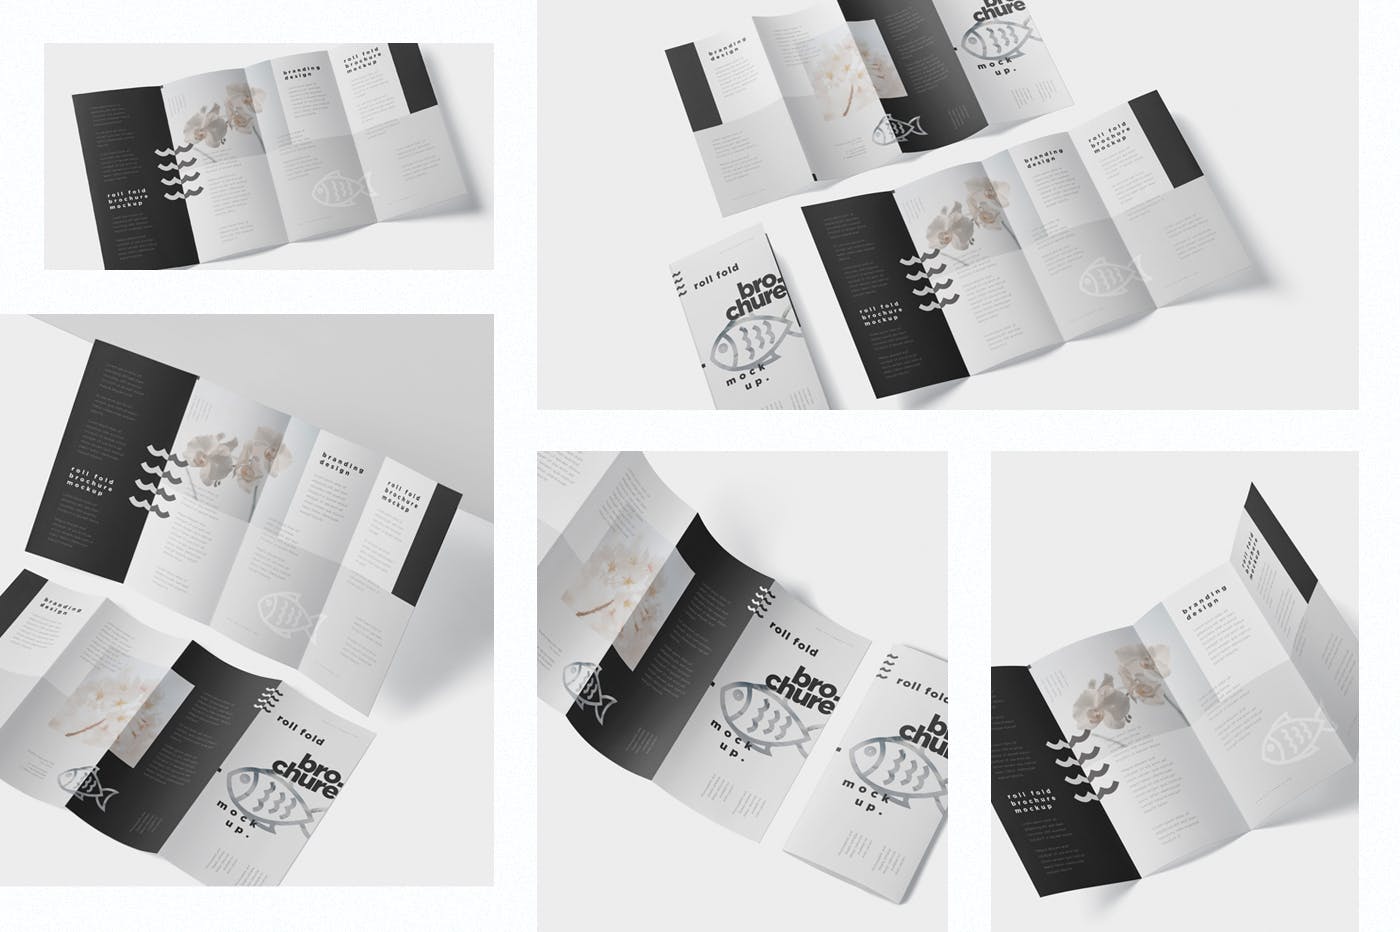 折叠设计风格企业传单/宣传册设计样机第一素材精选 Roll-Fold Brochure Mockup – DL DIN Lang Size插图(1)